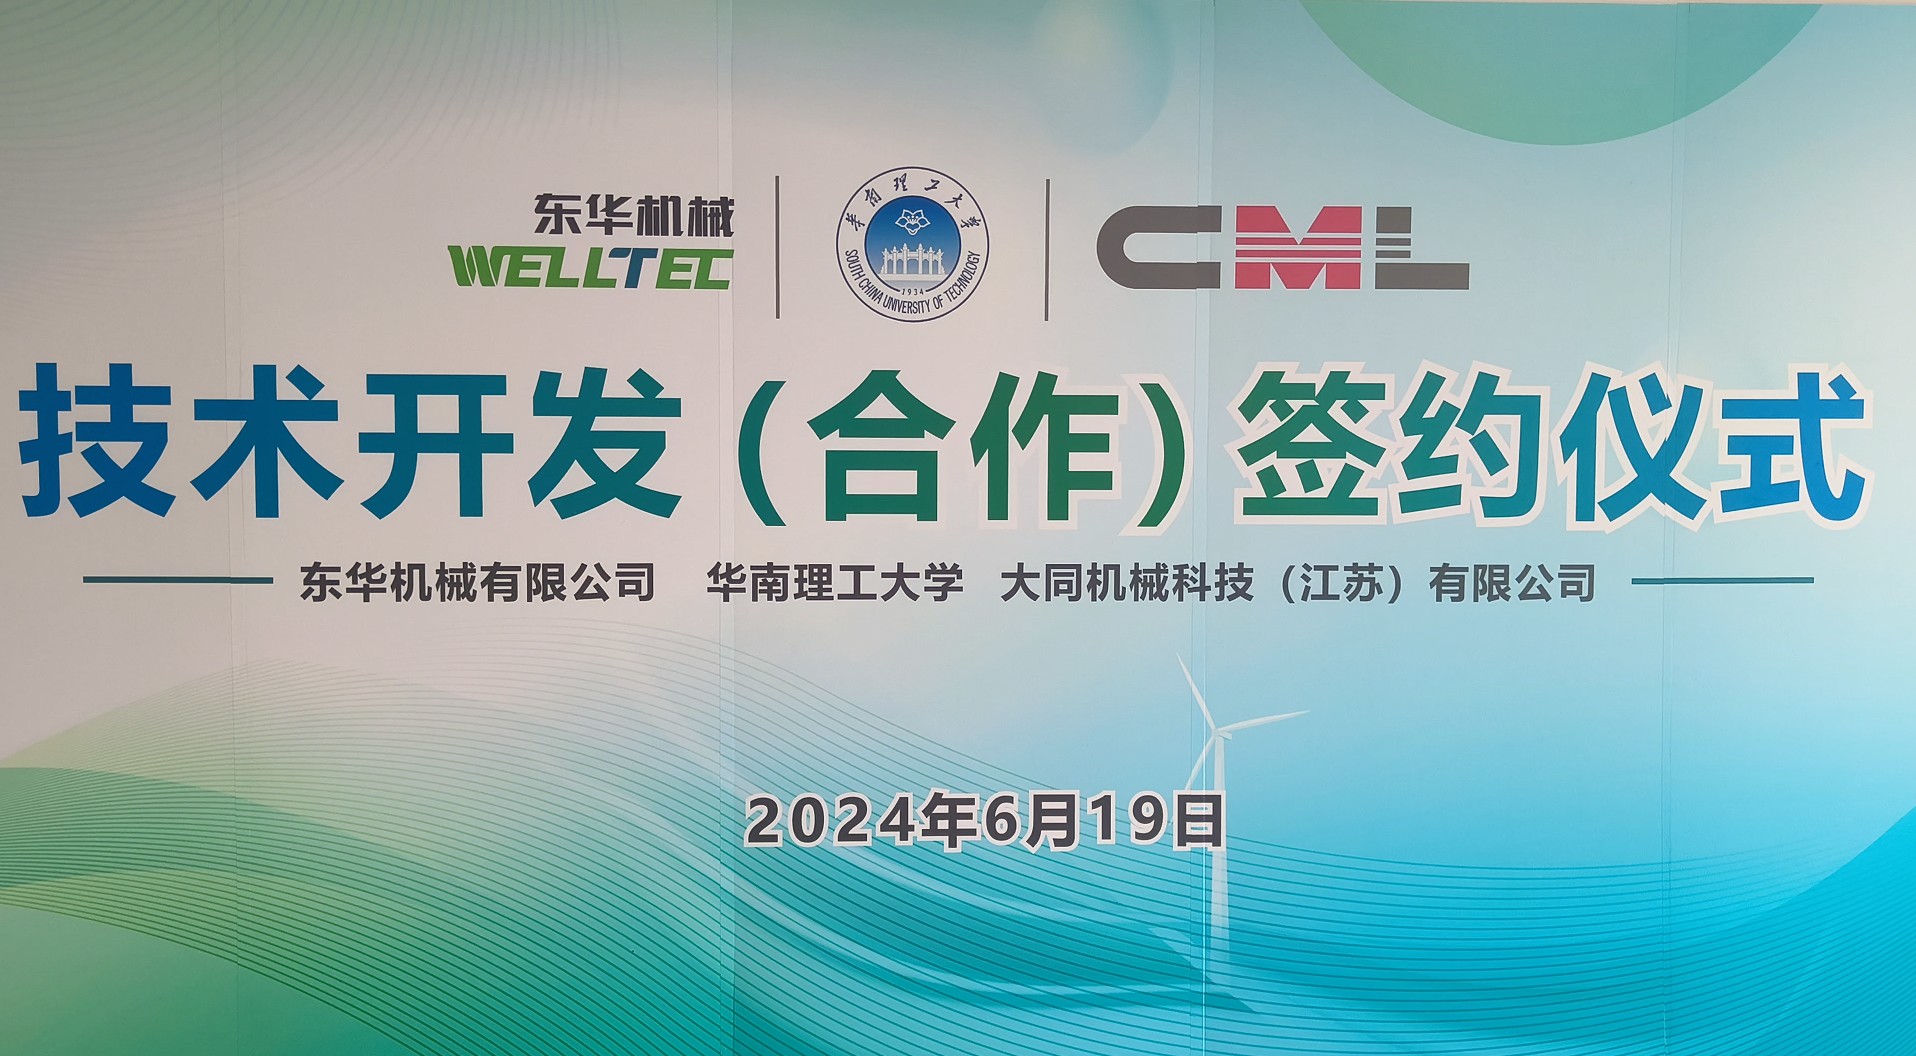 万博备用入口
机械、江苏大同与华南理工大学签署技术合作协议